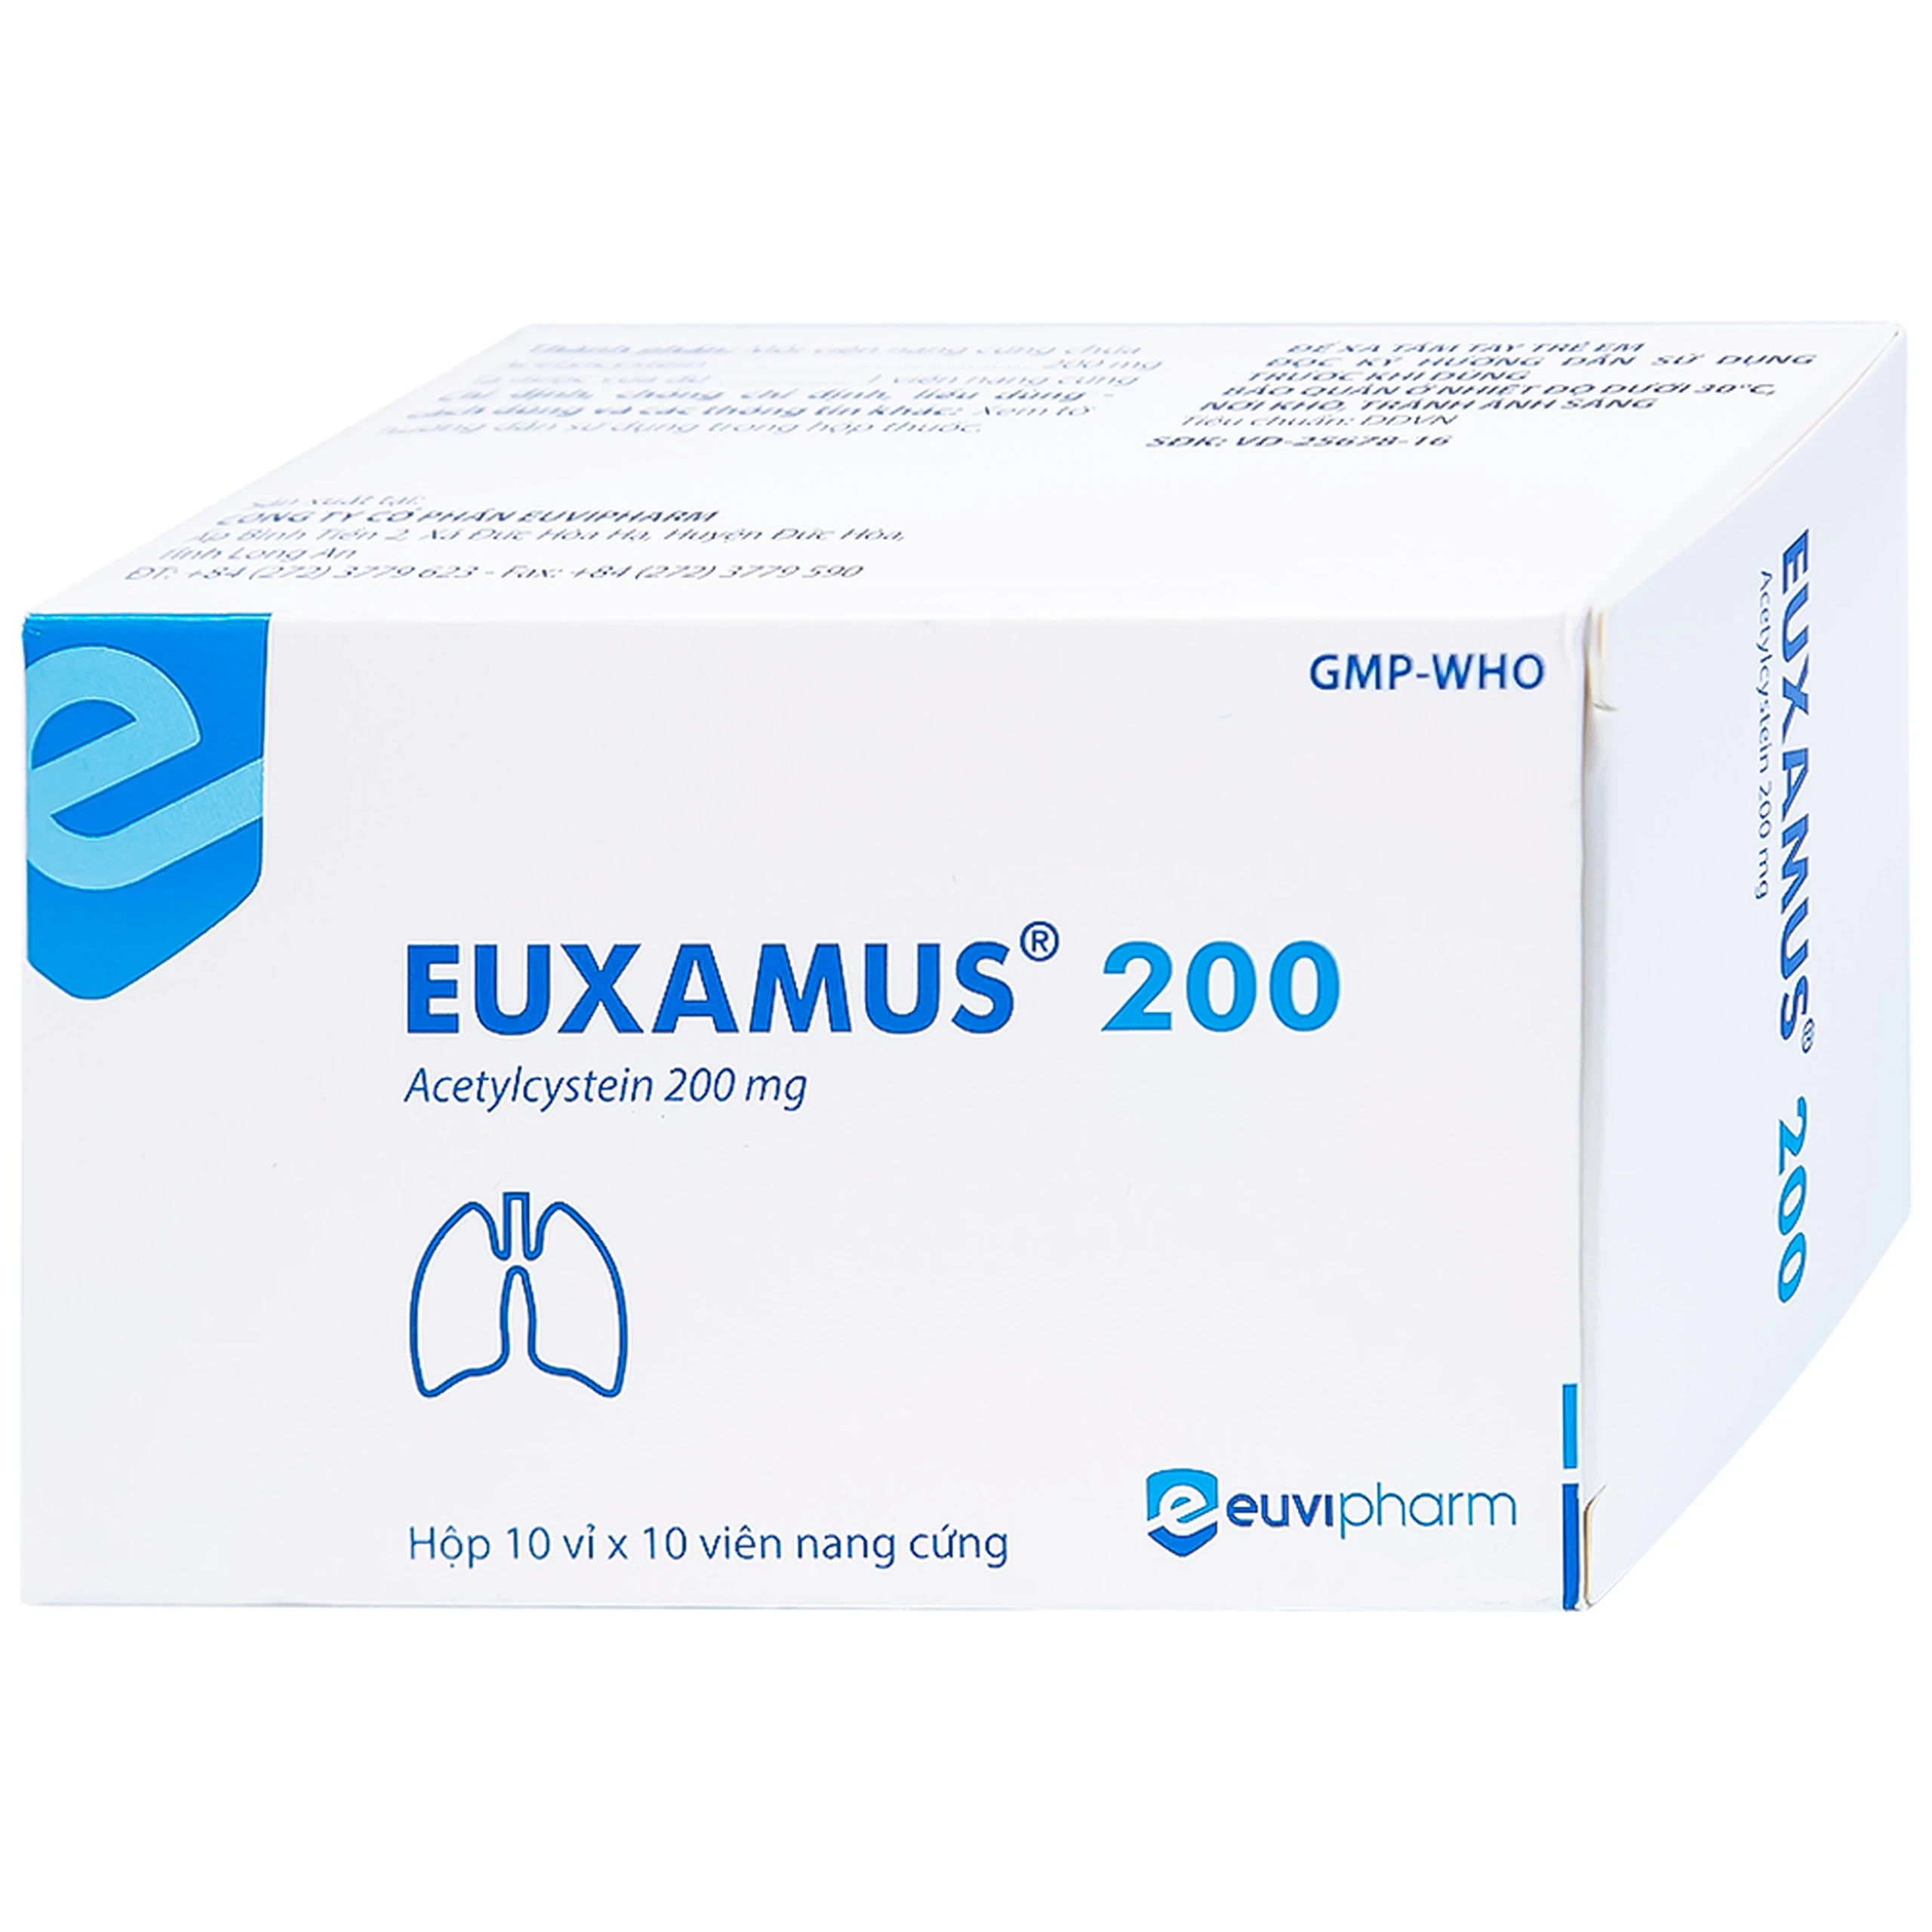 Thuốc Euxamus 200mg Euvipharm tiêu chất nhầy trong bệnh nhầy nhớt (10 vỉ x 10 viên)